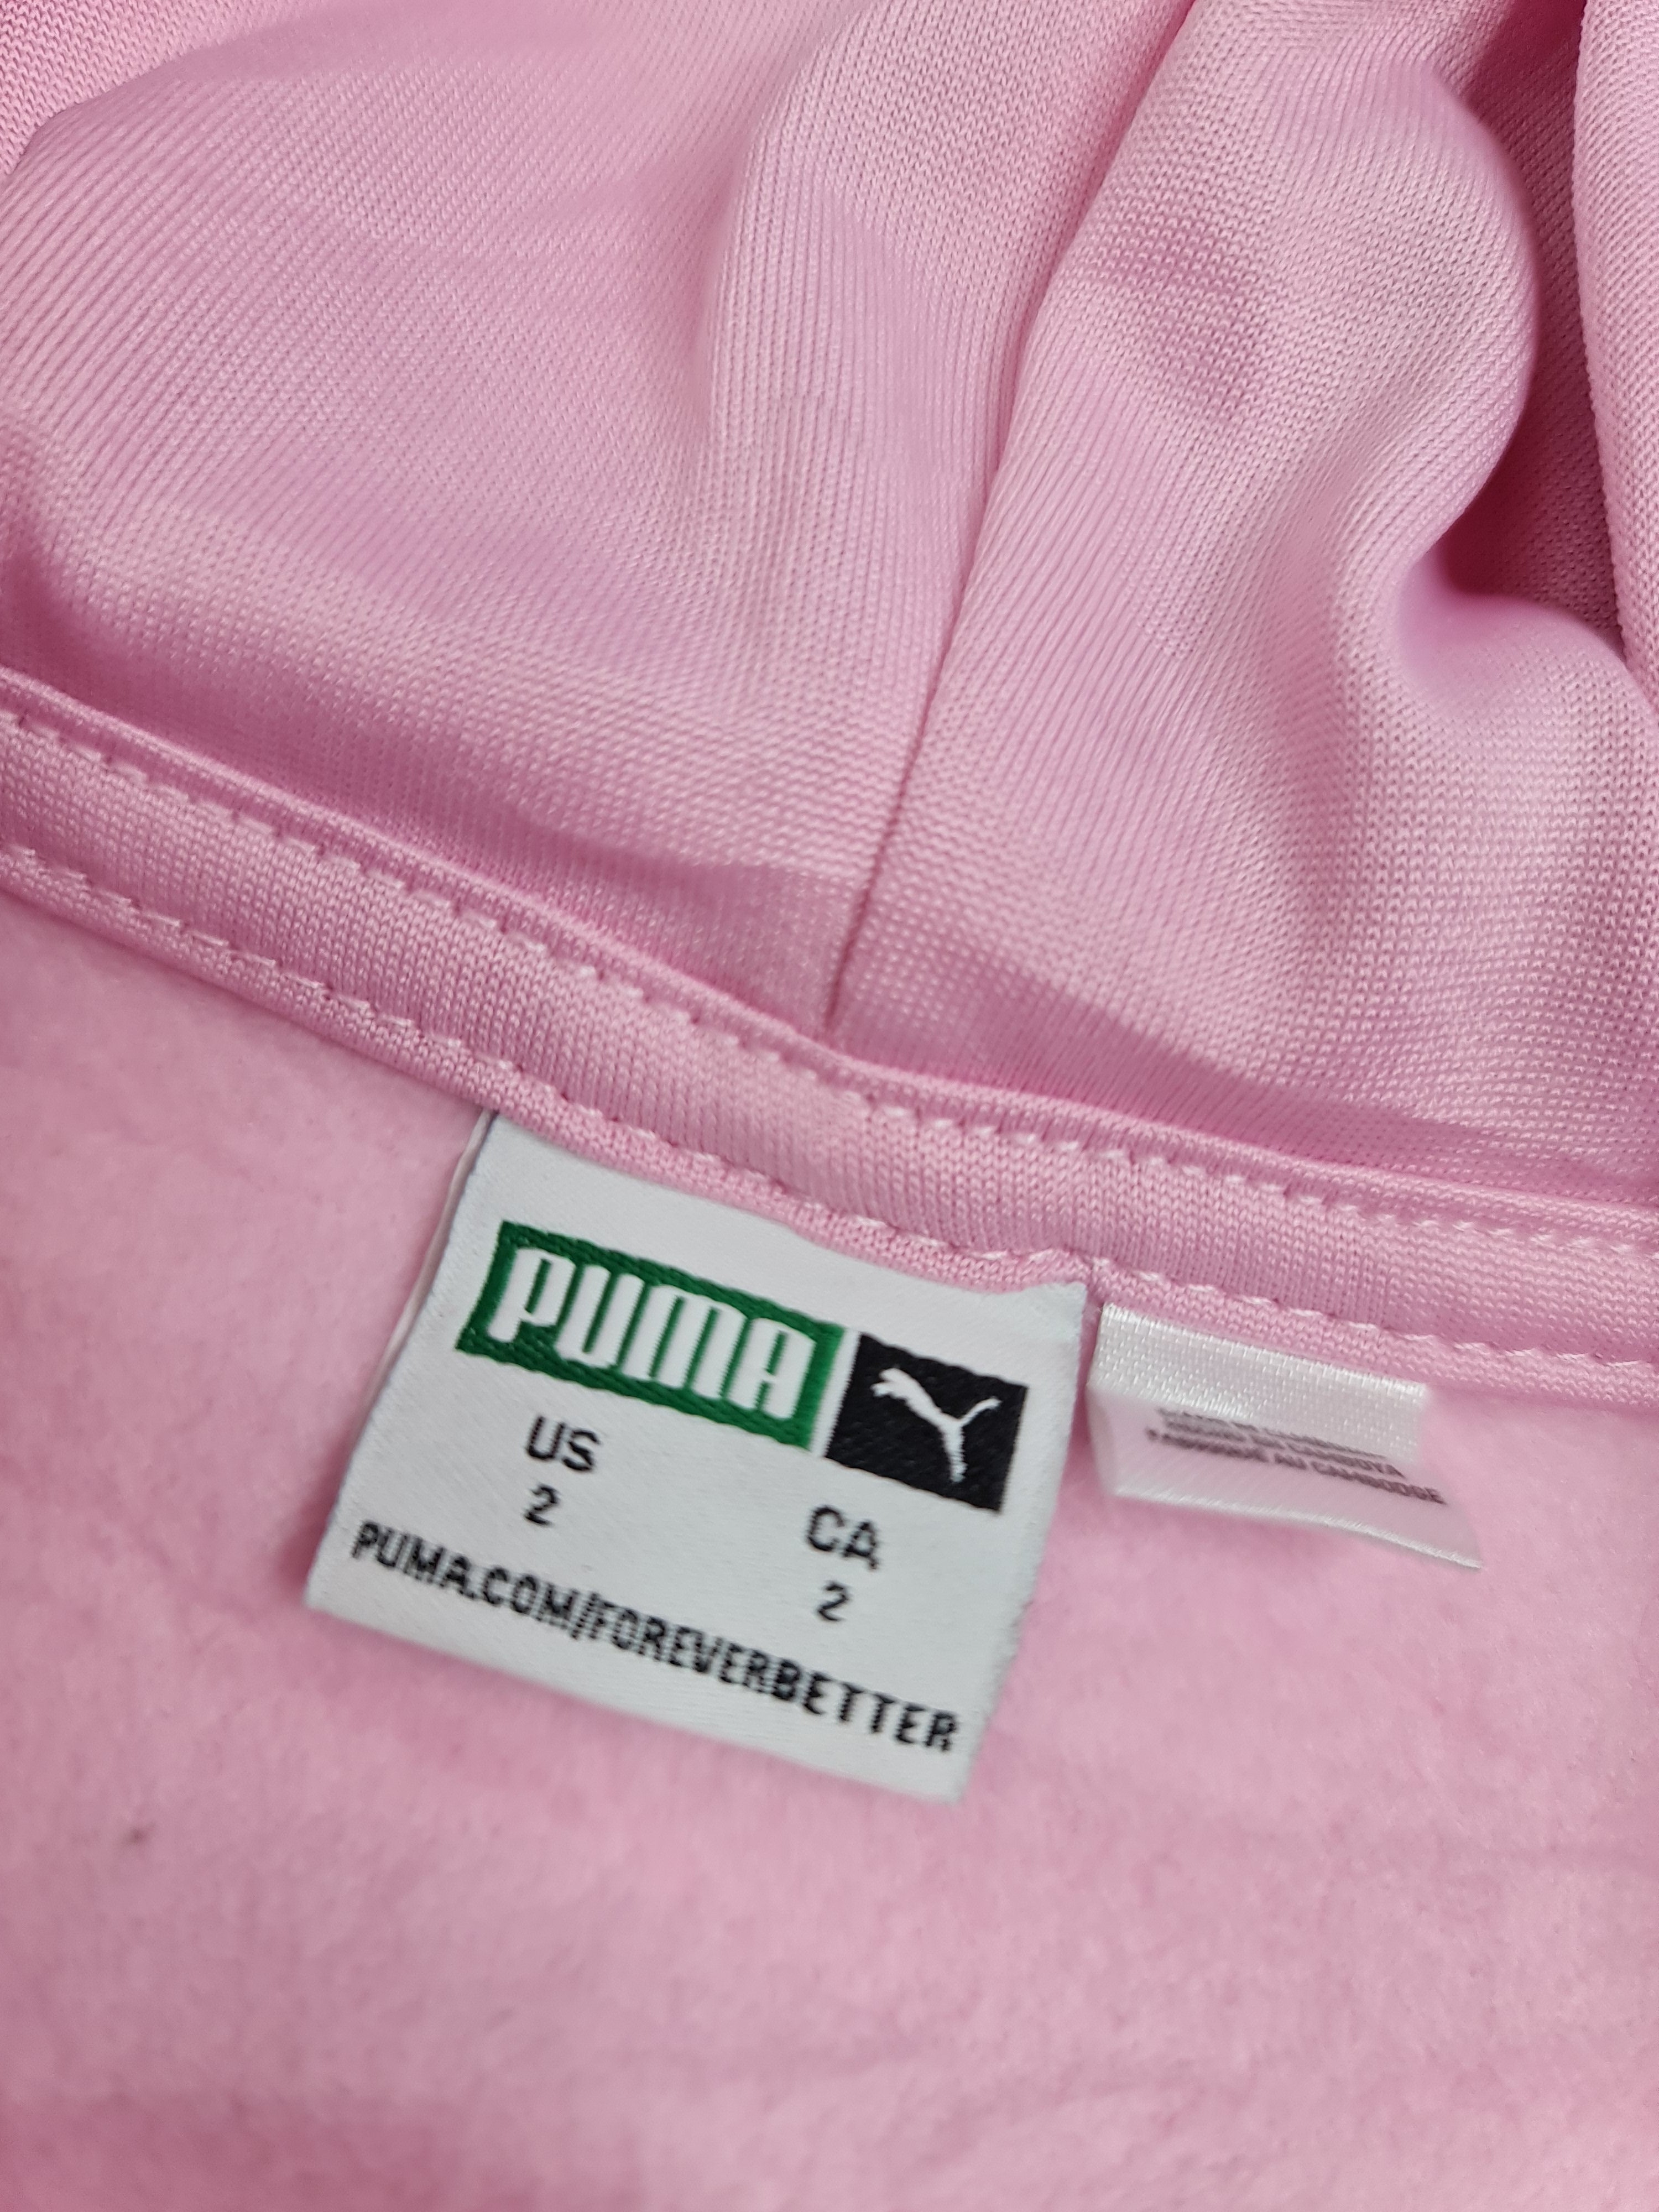 Suéter rosa de niña, marca Puma talla 2 años.